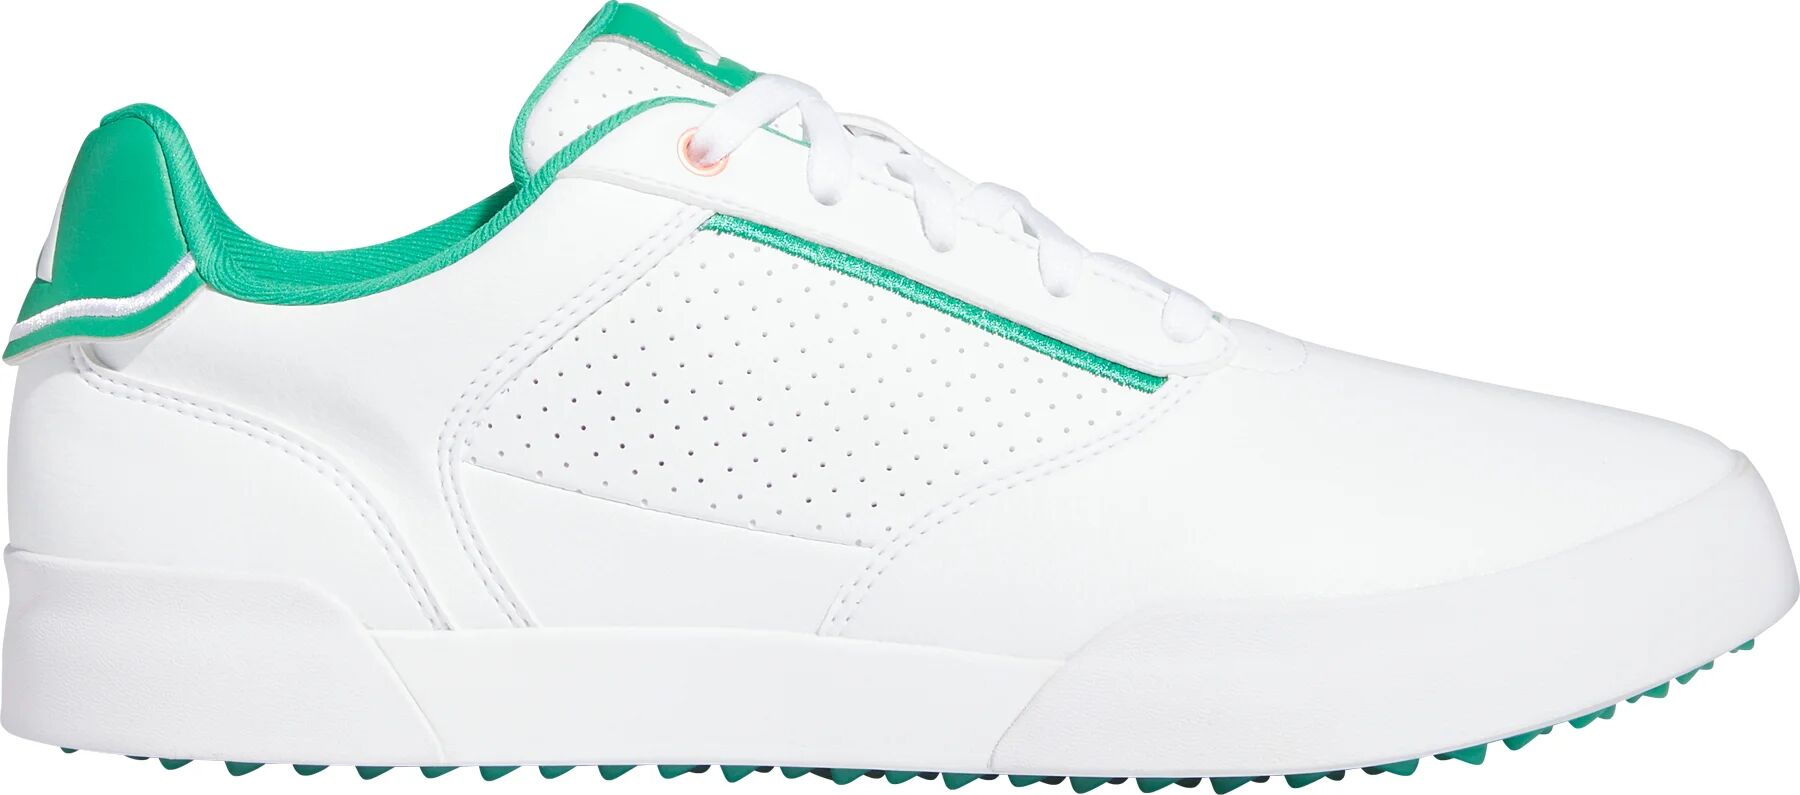 adidas Retrocross Spikeless Golf Shoes - Cloud White/Court Green/Cloud White - 8.5 - MEDIUM